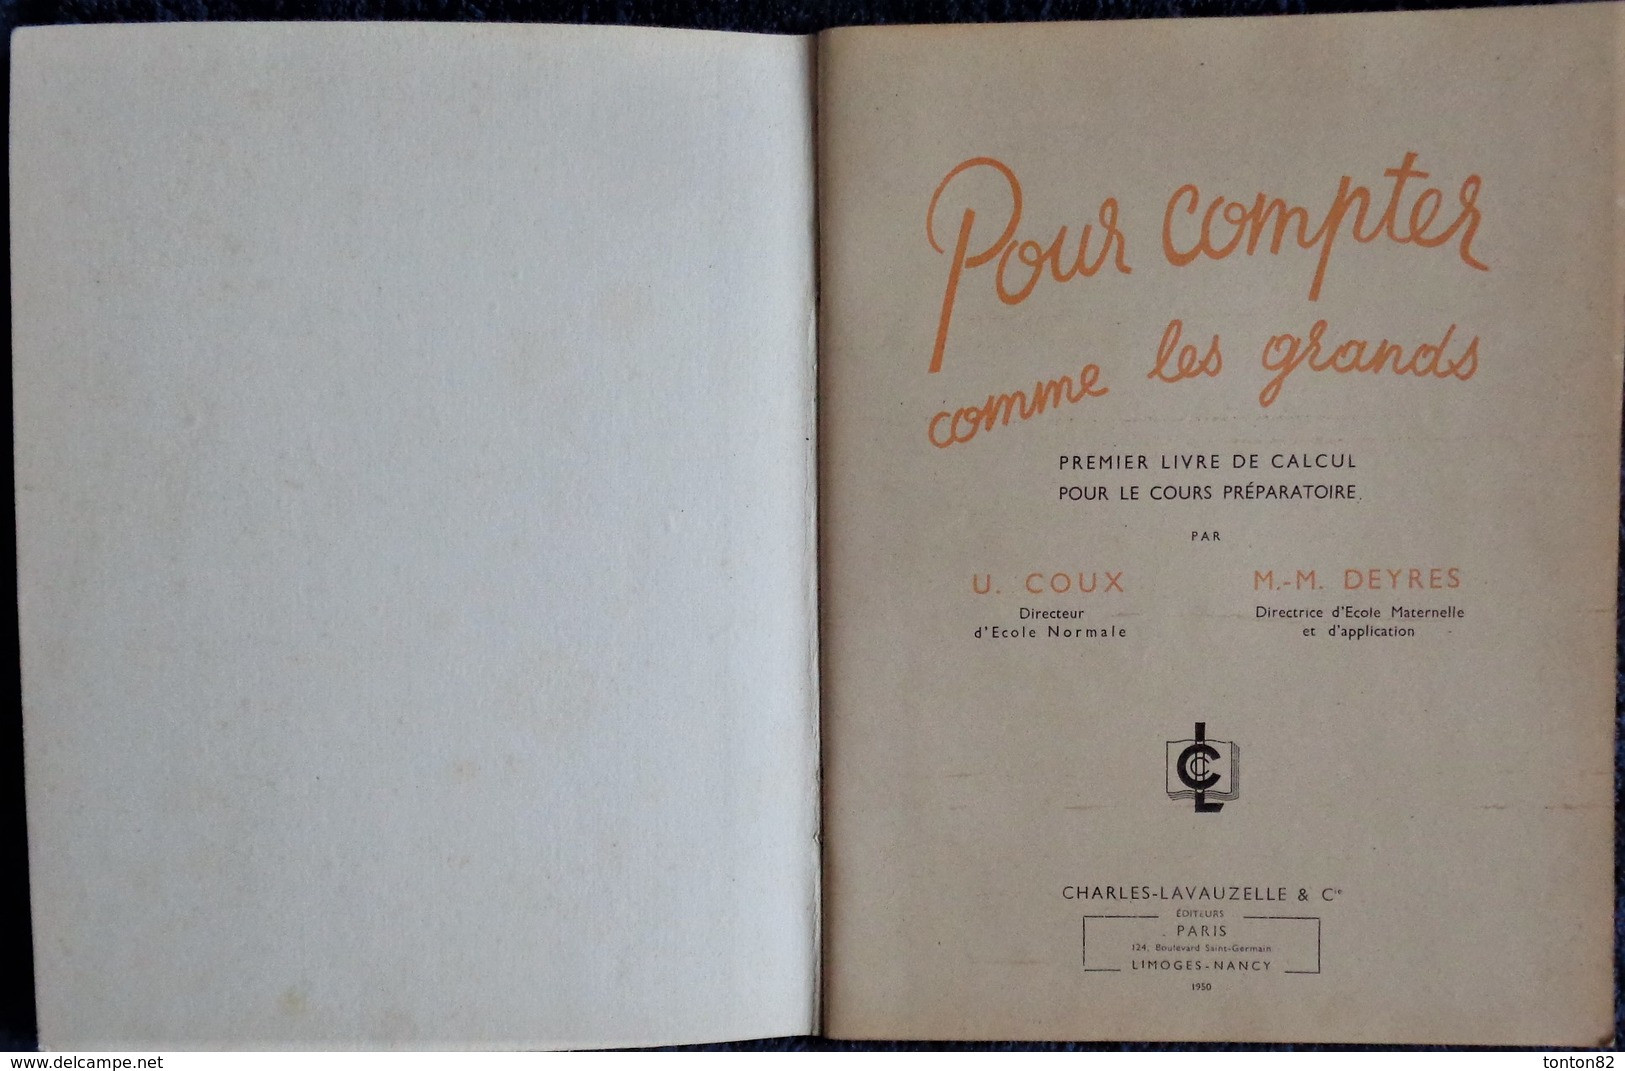 U. Coux - M.M. Deyres - Pour Compter Comme Les Grands - 1er Livre De Calcul - Charles-Lavauzelle & Cie, éditeurs - 1950 - 0-6 Years Old